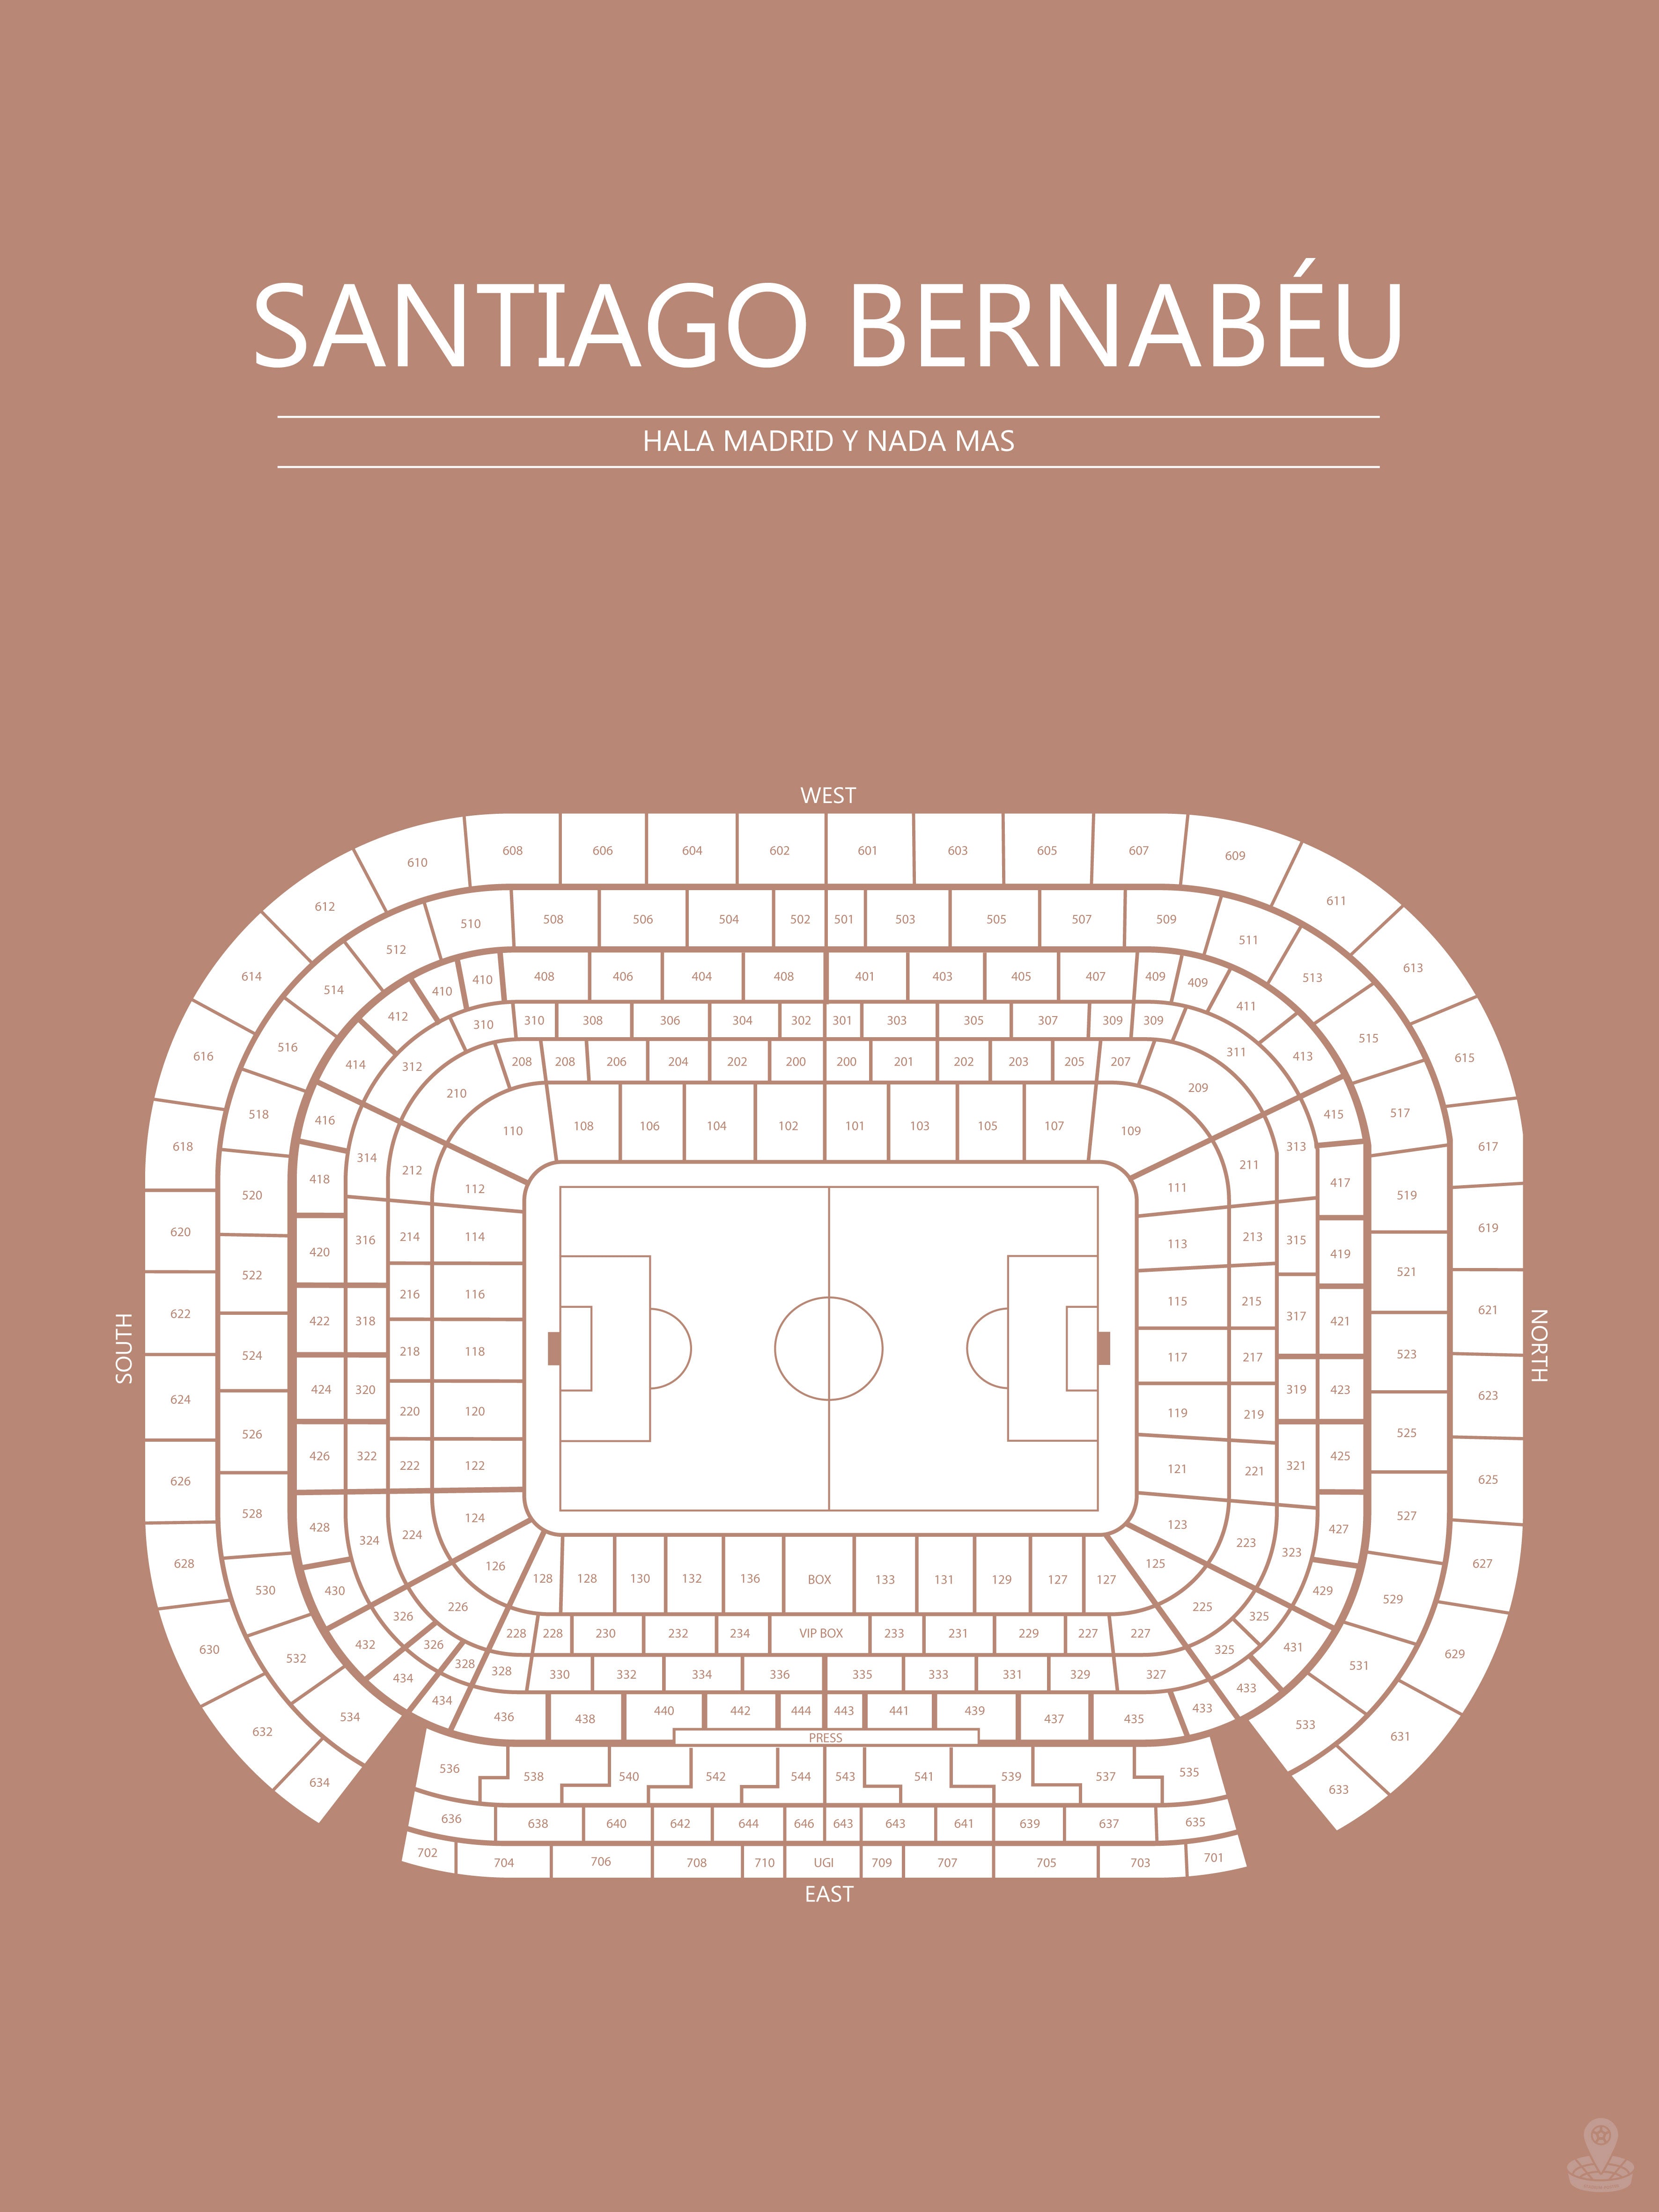 Fodbold plakat Real Madrid Santiago Bernabeu Sahara